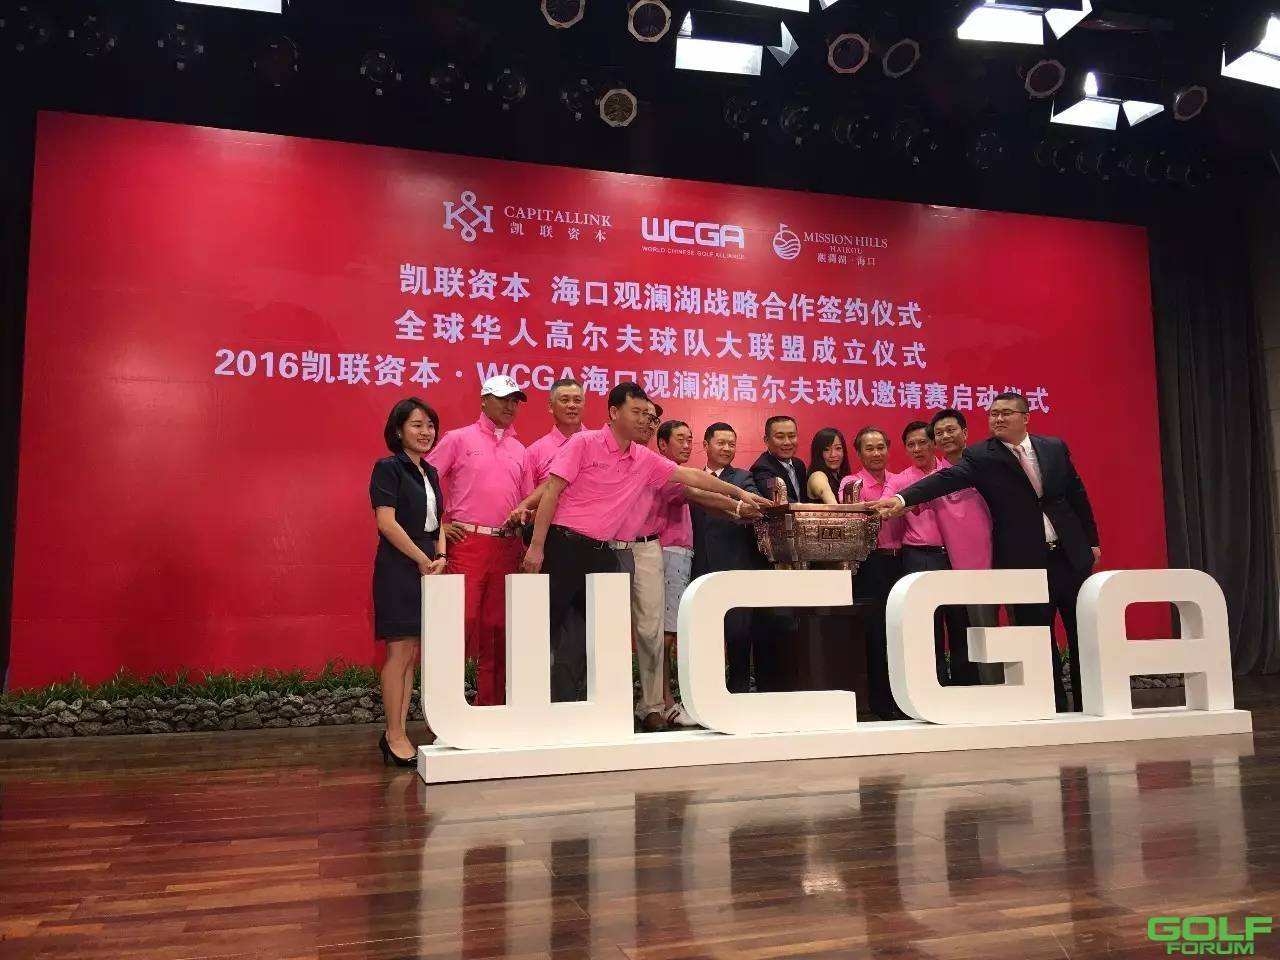 全球华人高尔夫球队大联盟(WCGA)成立仪式在海口观澜湖隆重举行 ...